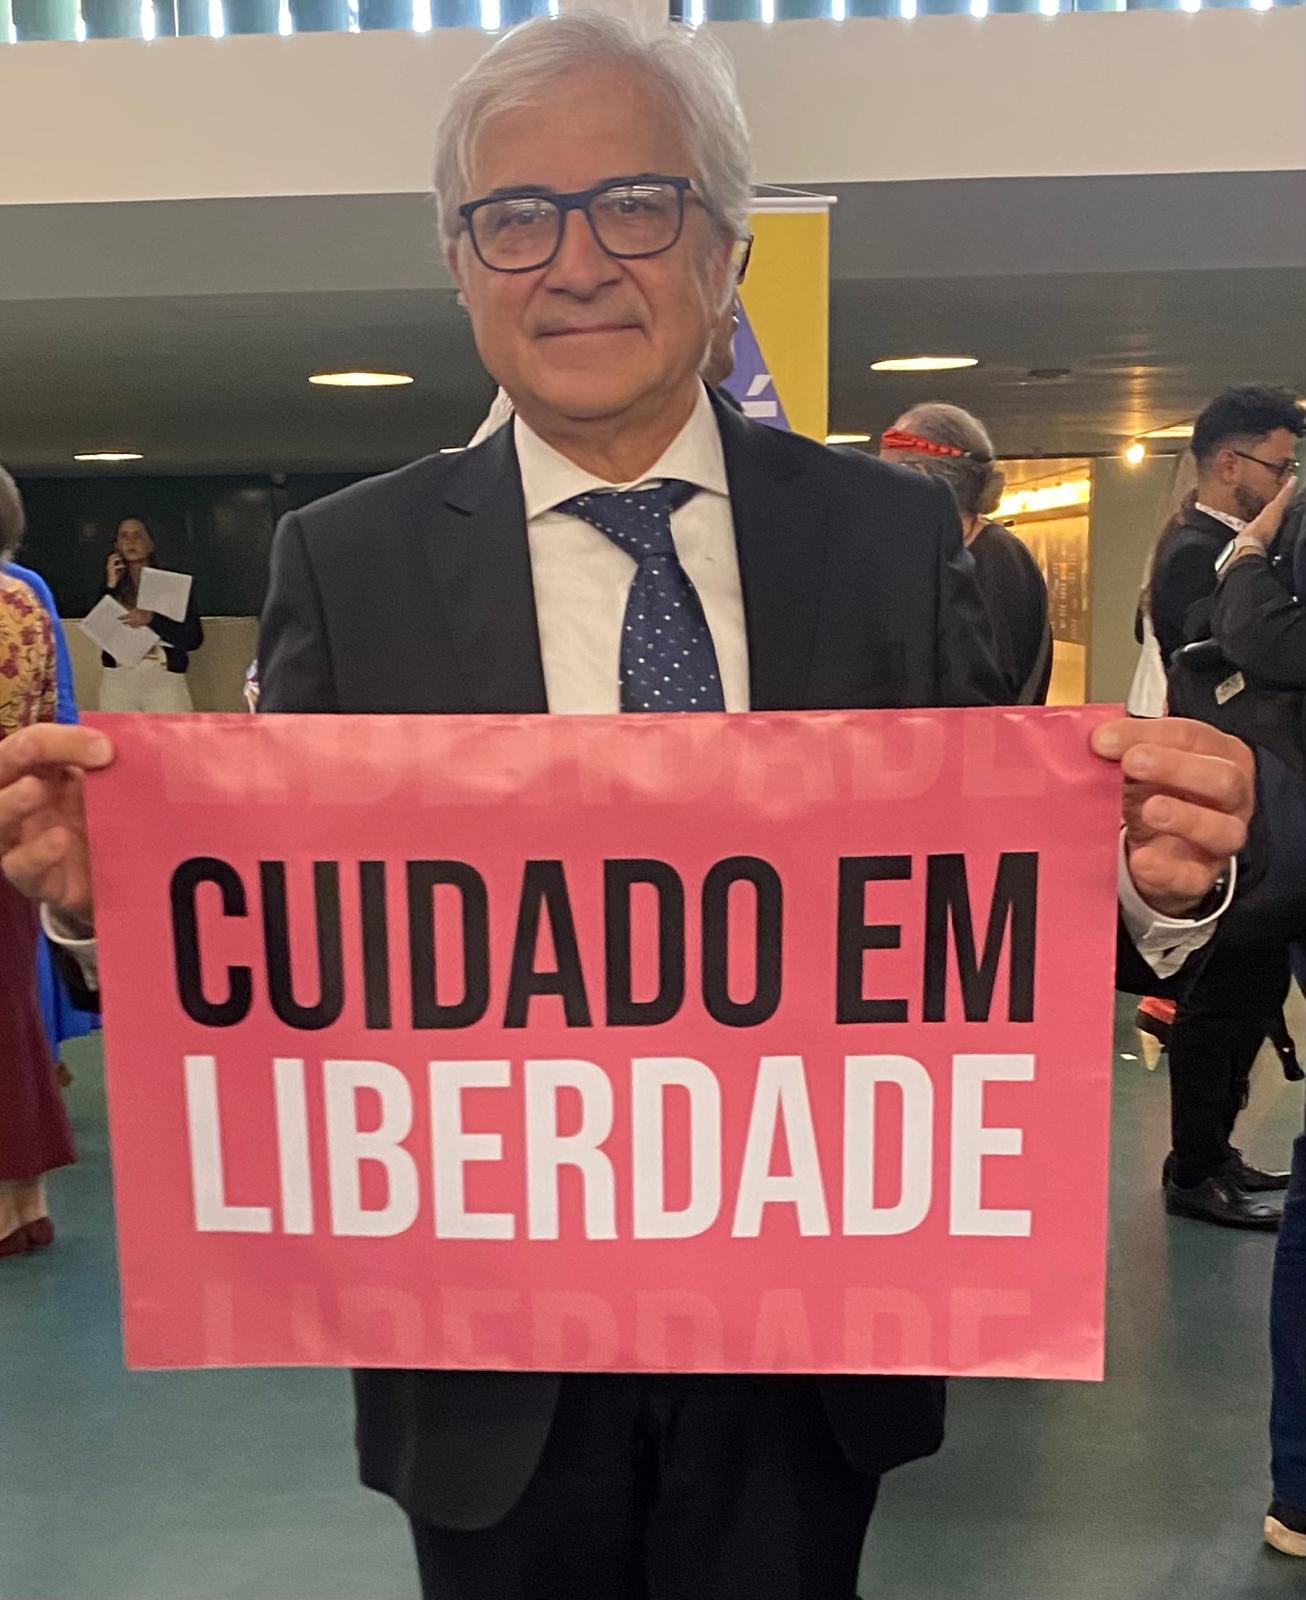 Roberto Mezzina in giacca e cravatta, con un cartello su cui è scritto "Cuidado em liberdade"